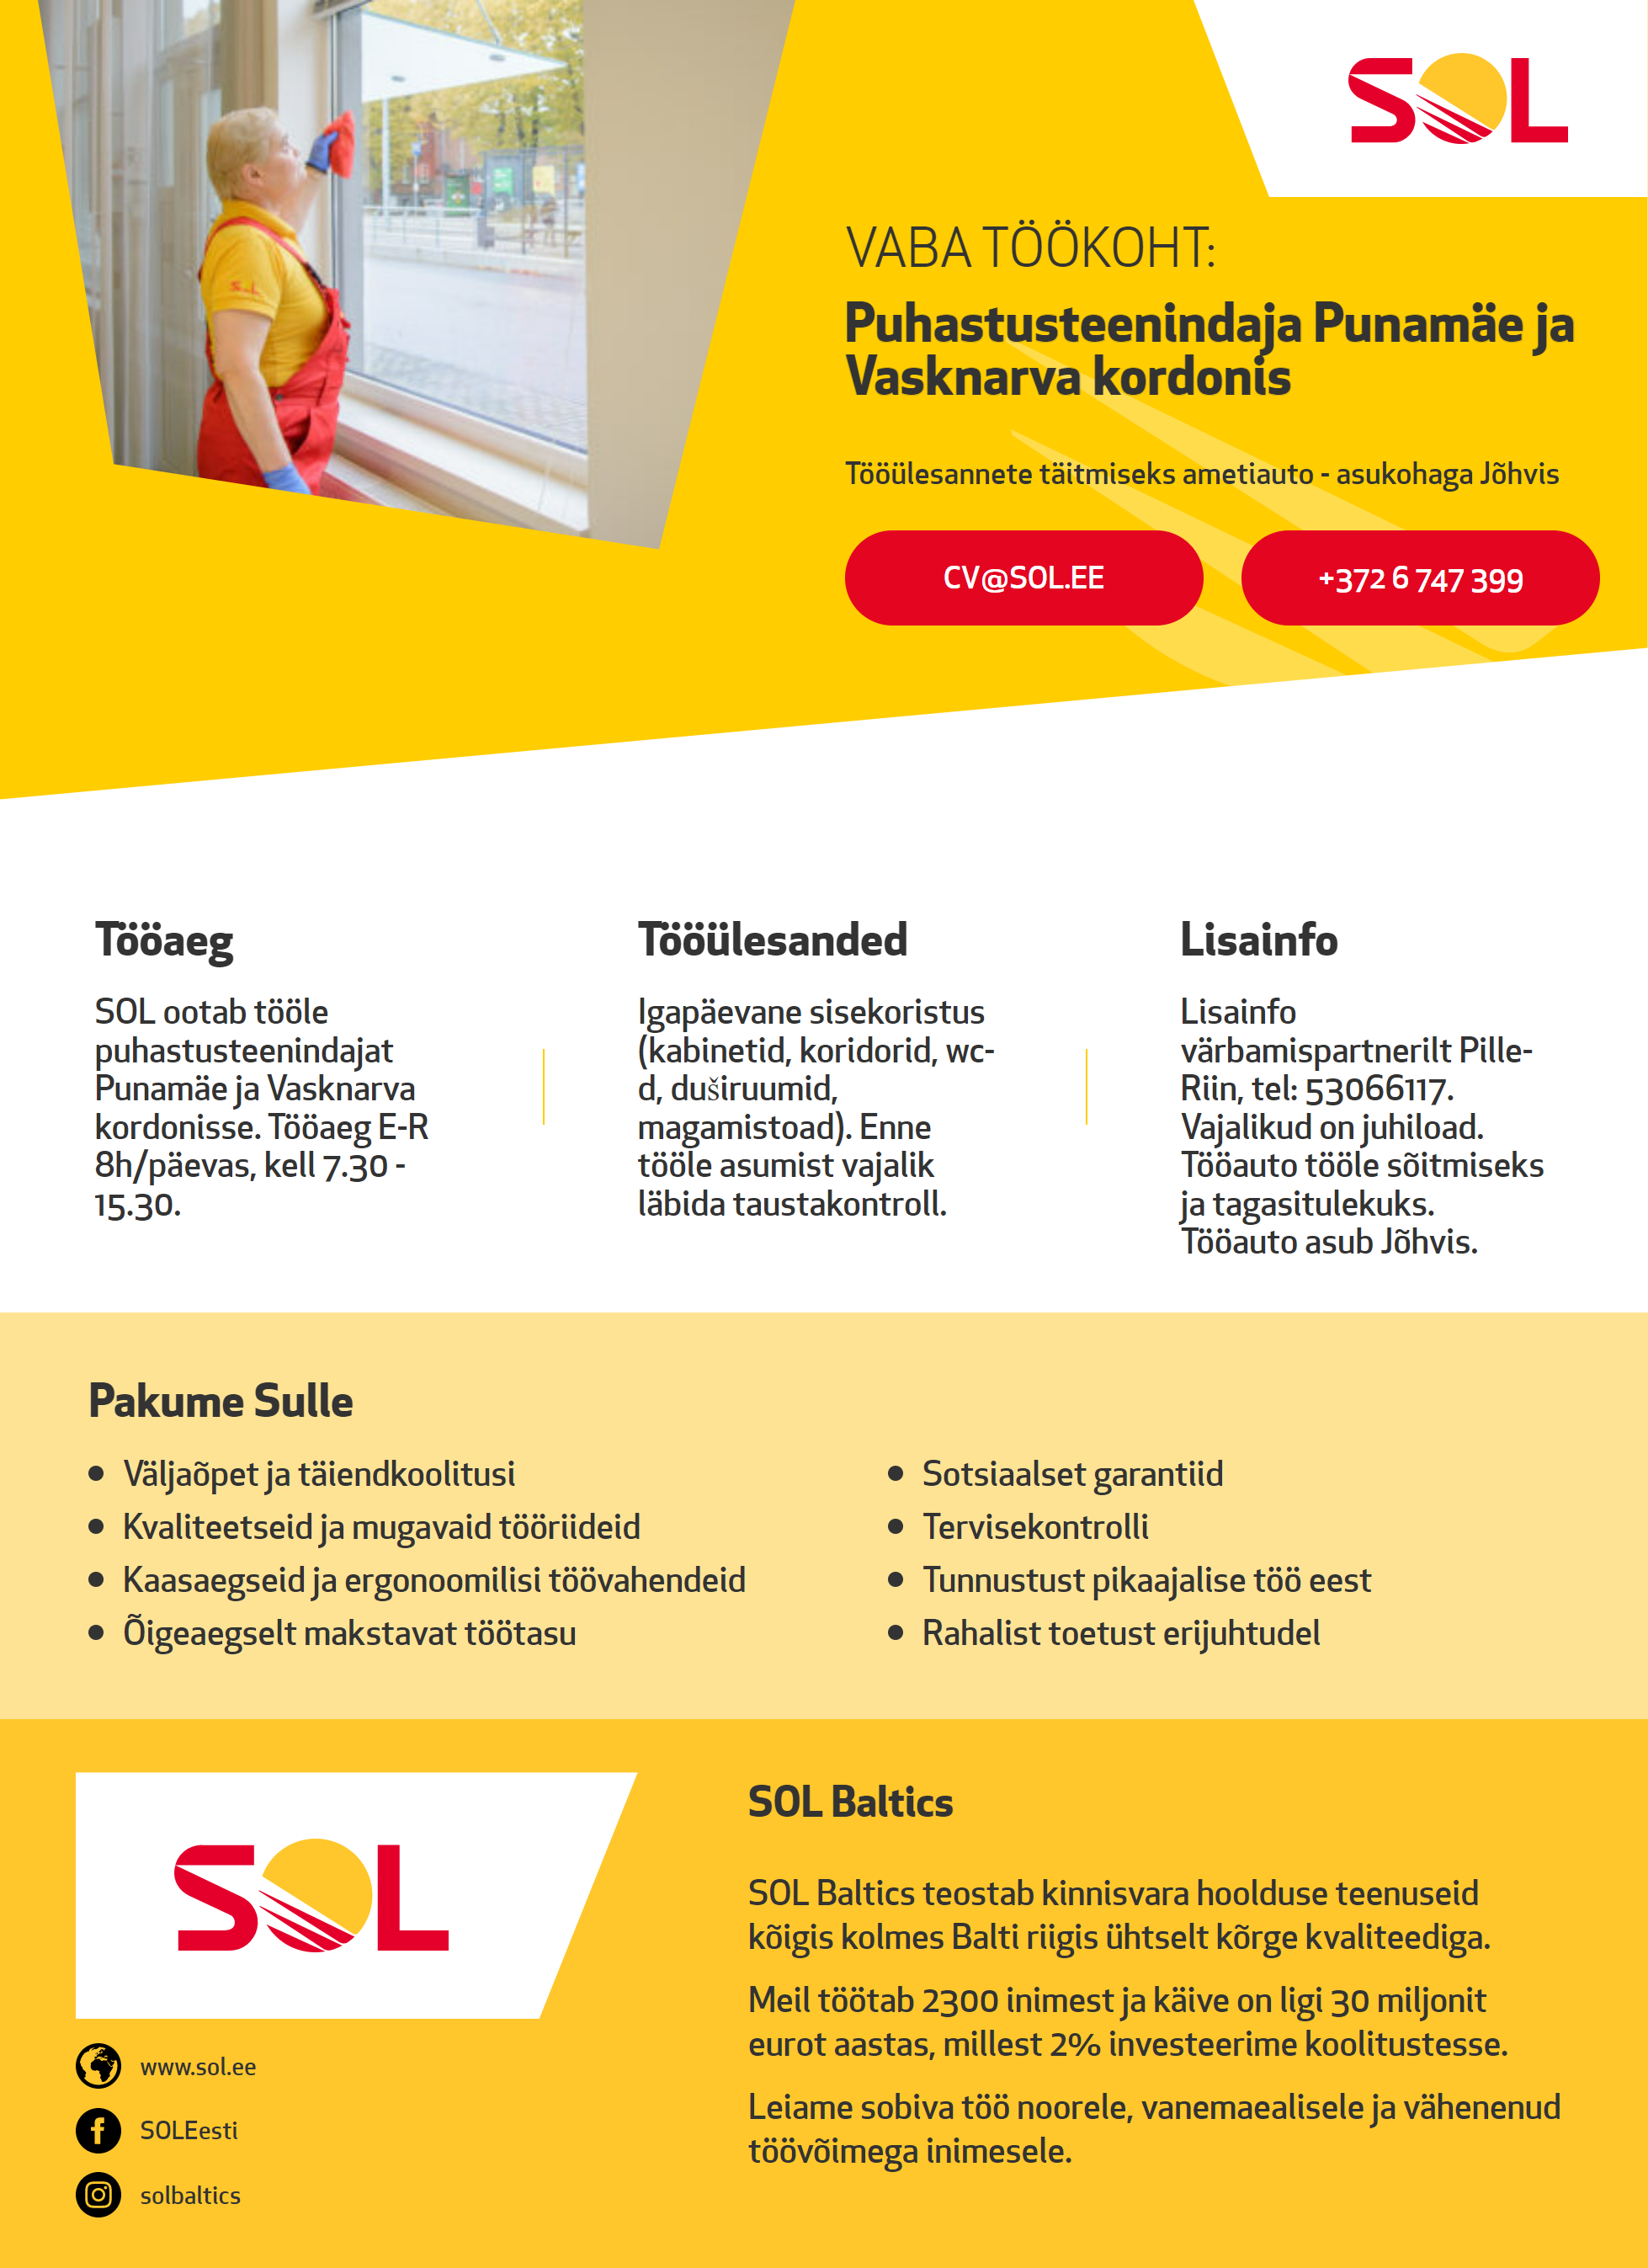 SOL Baltics OÜ Puhastusteenindaja Punamäe ja Vasknarva kordonis - tööülesannete täitmiseks auto.